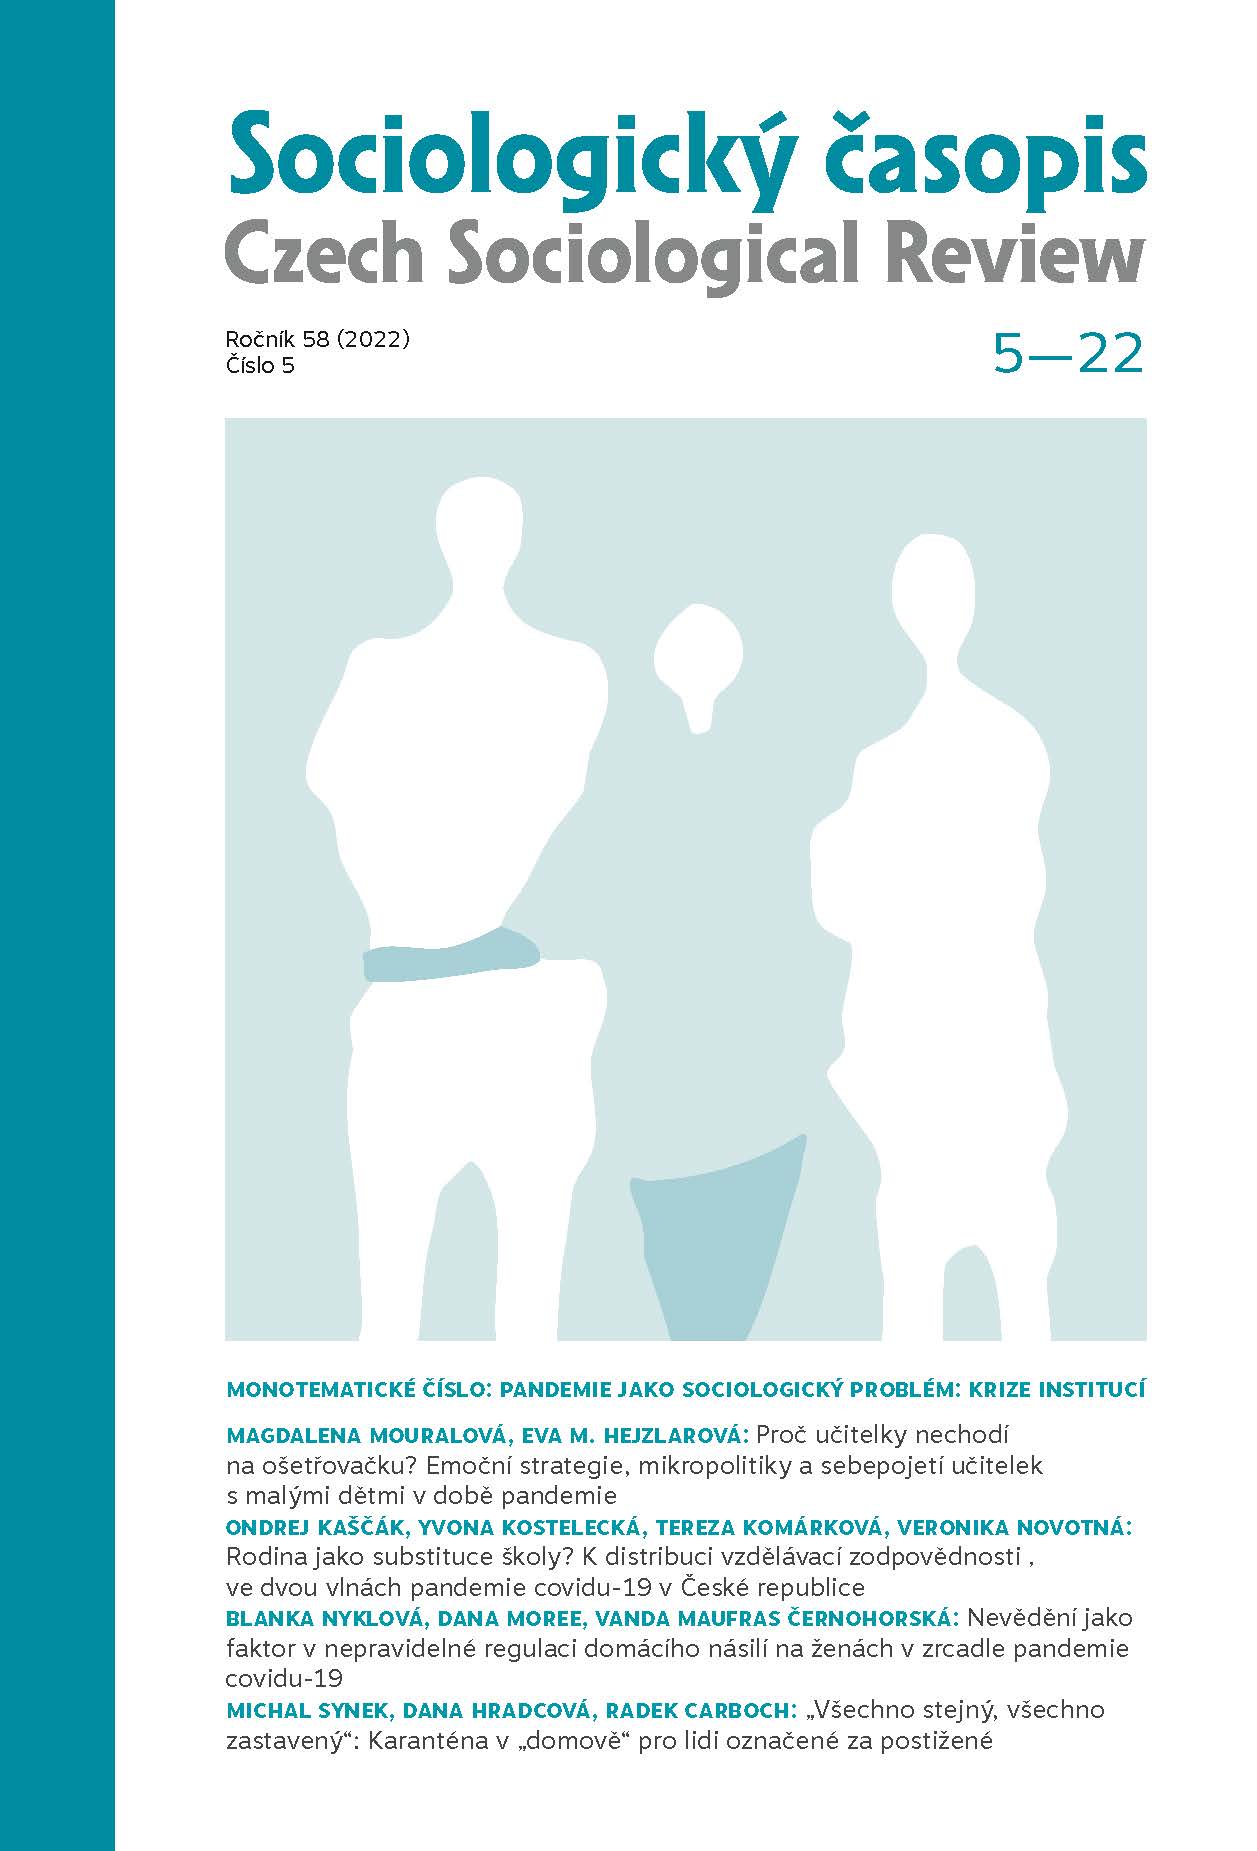 Nevědění jako faktor v nepravidelné regulaci domácího násilí na ženách v zrcadle pandemie covidu-19